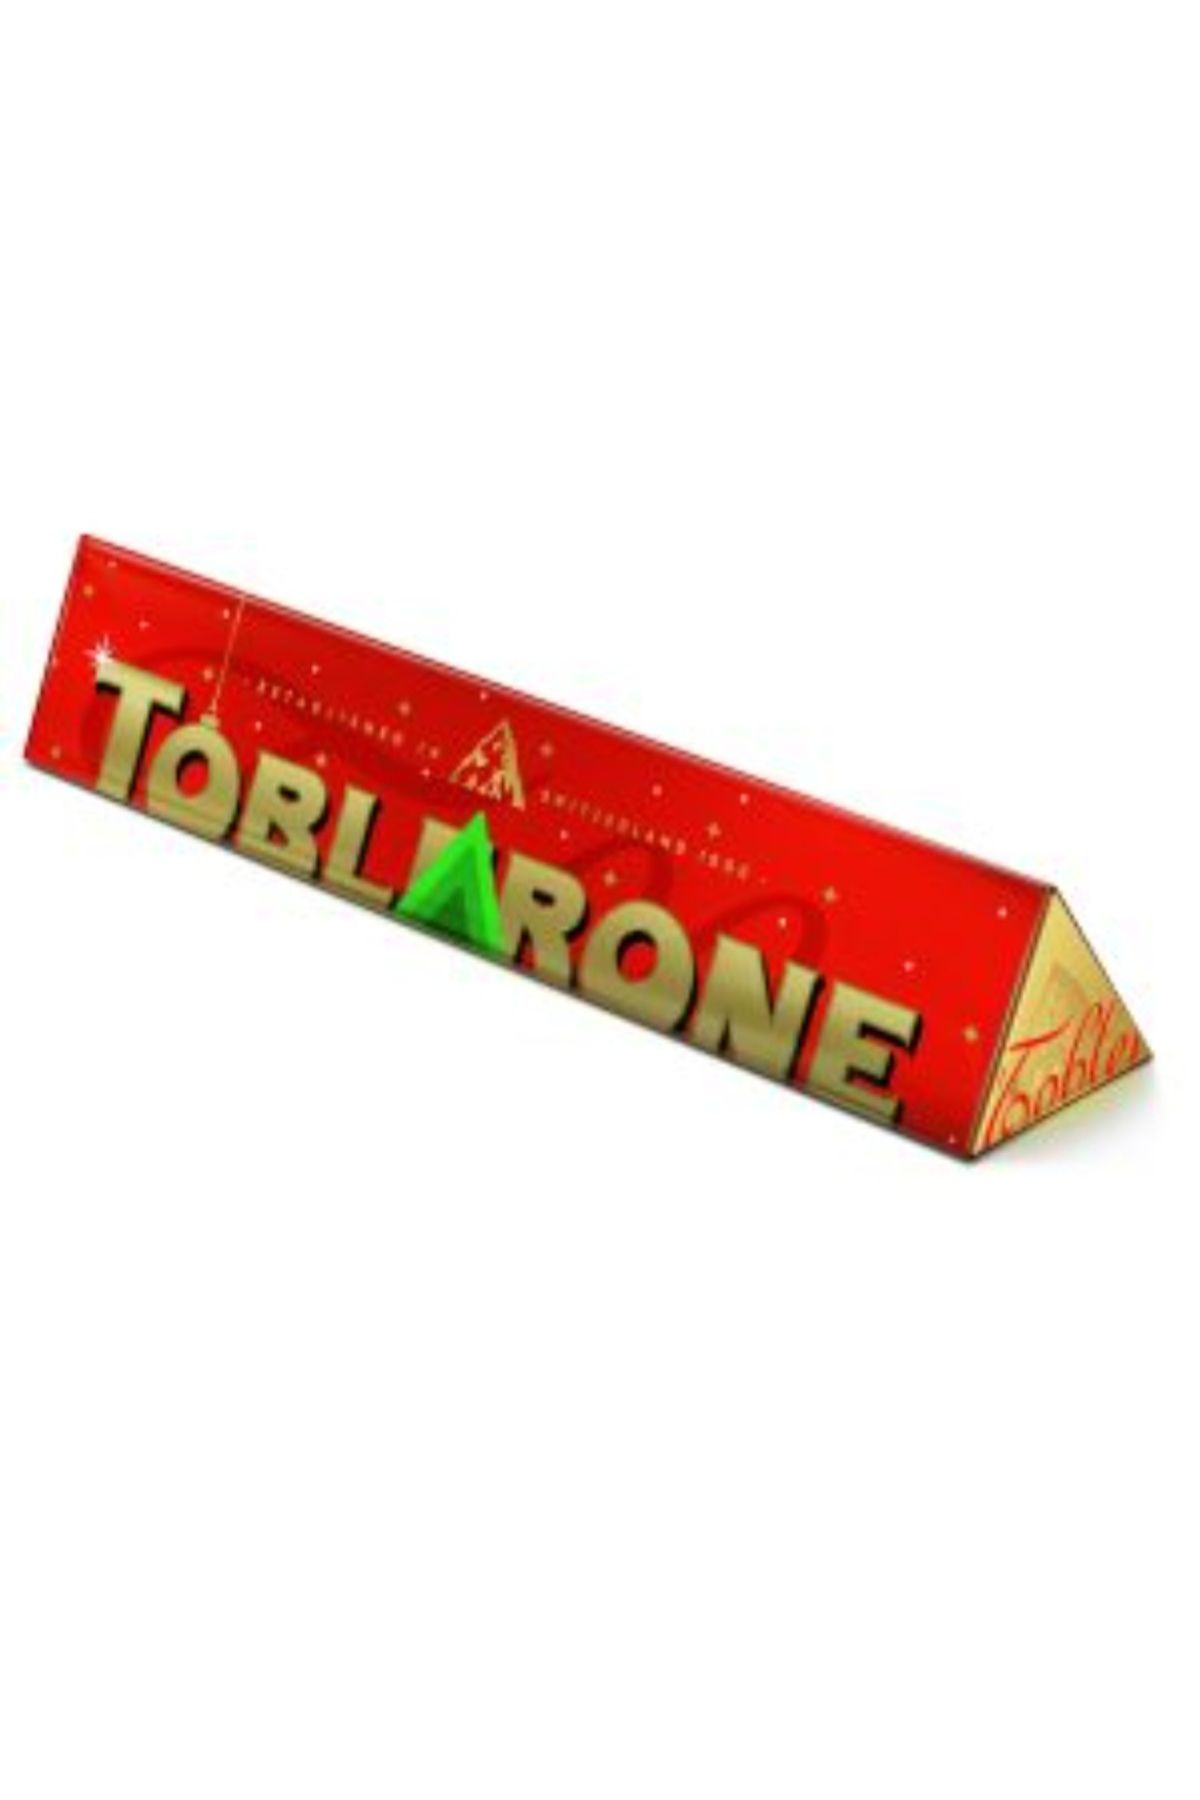 Toblerone yılbaşı özel 100 gr